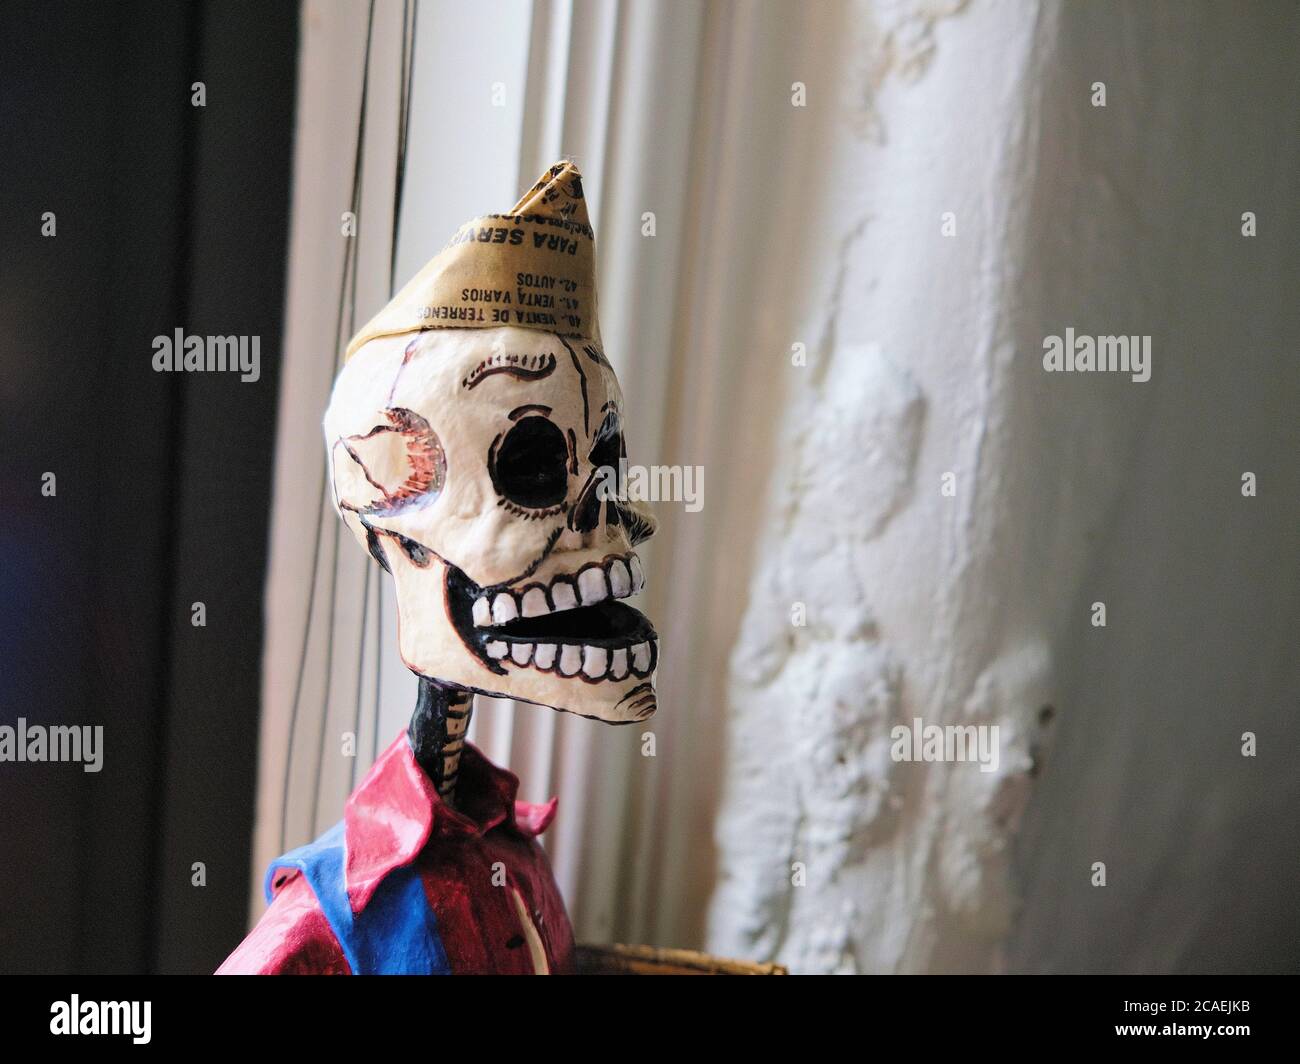 Kopf einer Skelett-Figur aus Papier-mache mit einem Papierhut aus Zeitung; Teil der mexikanischen Tag der Toten Kultur und Feier; mexikanische Tradition. Stockfoto